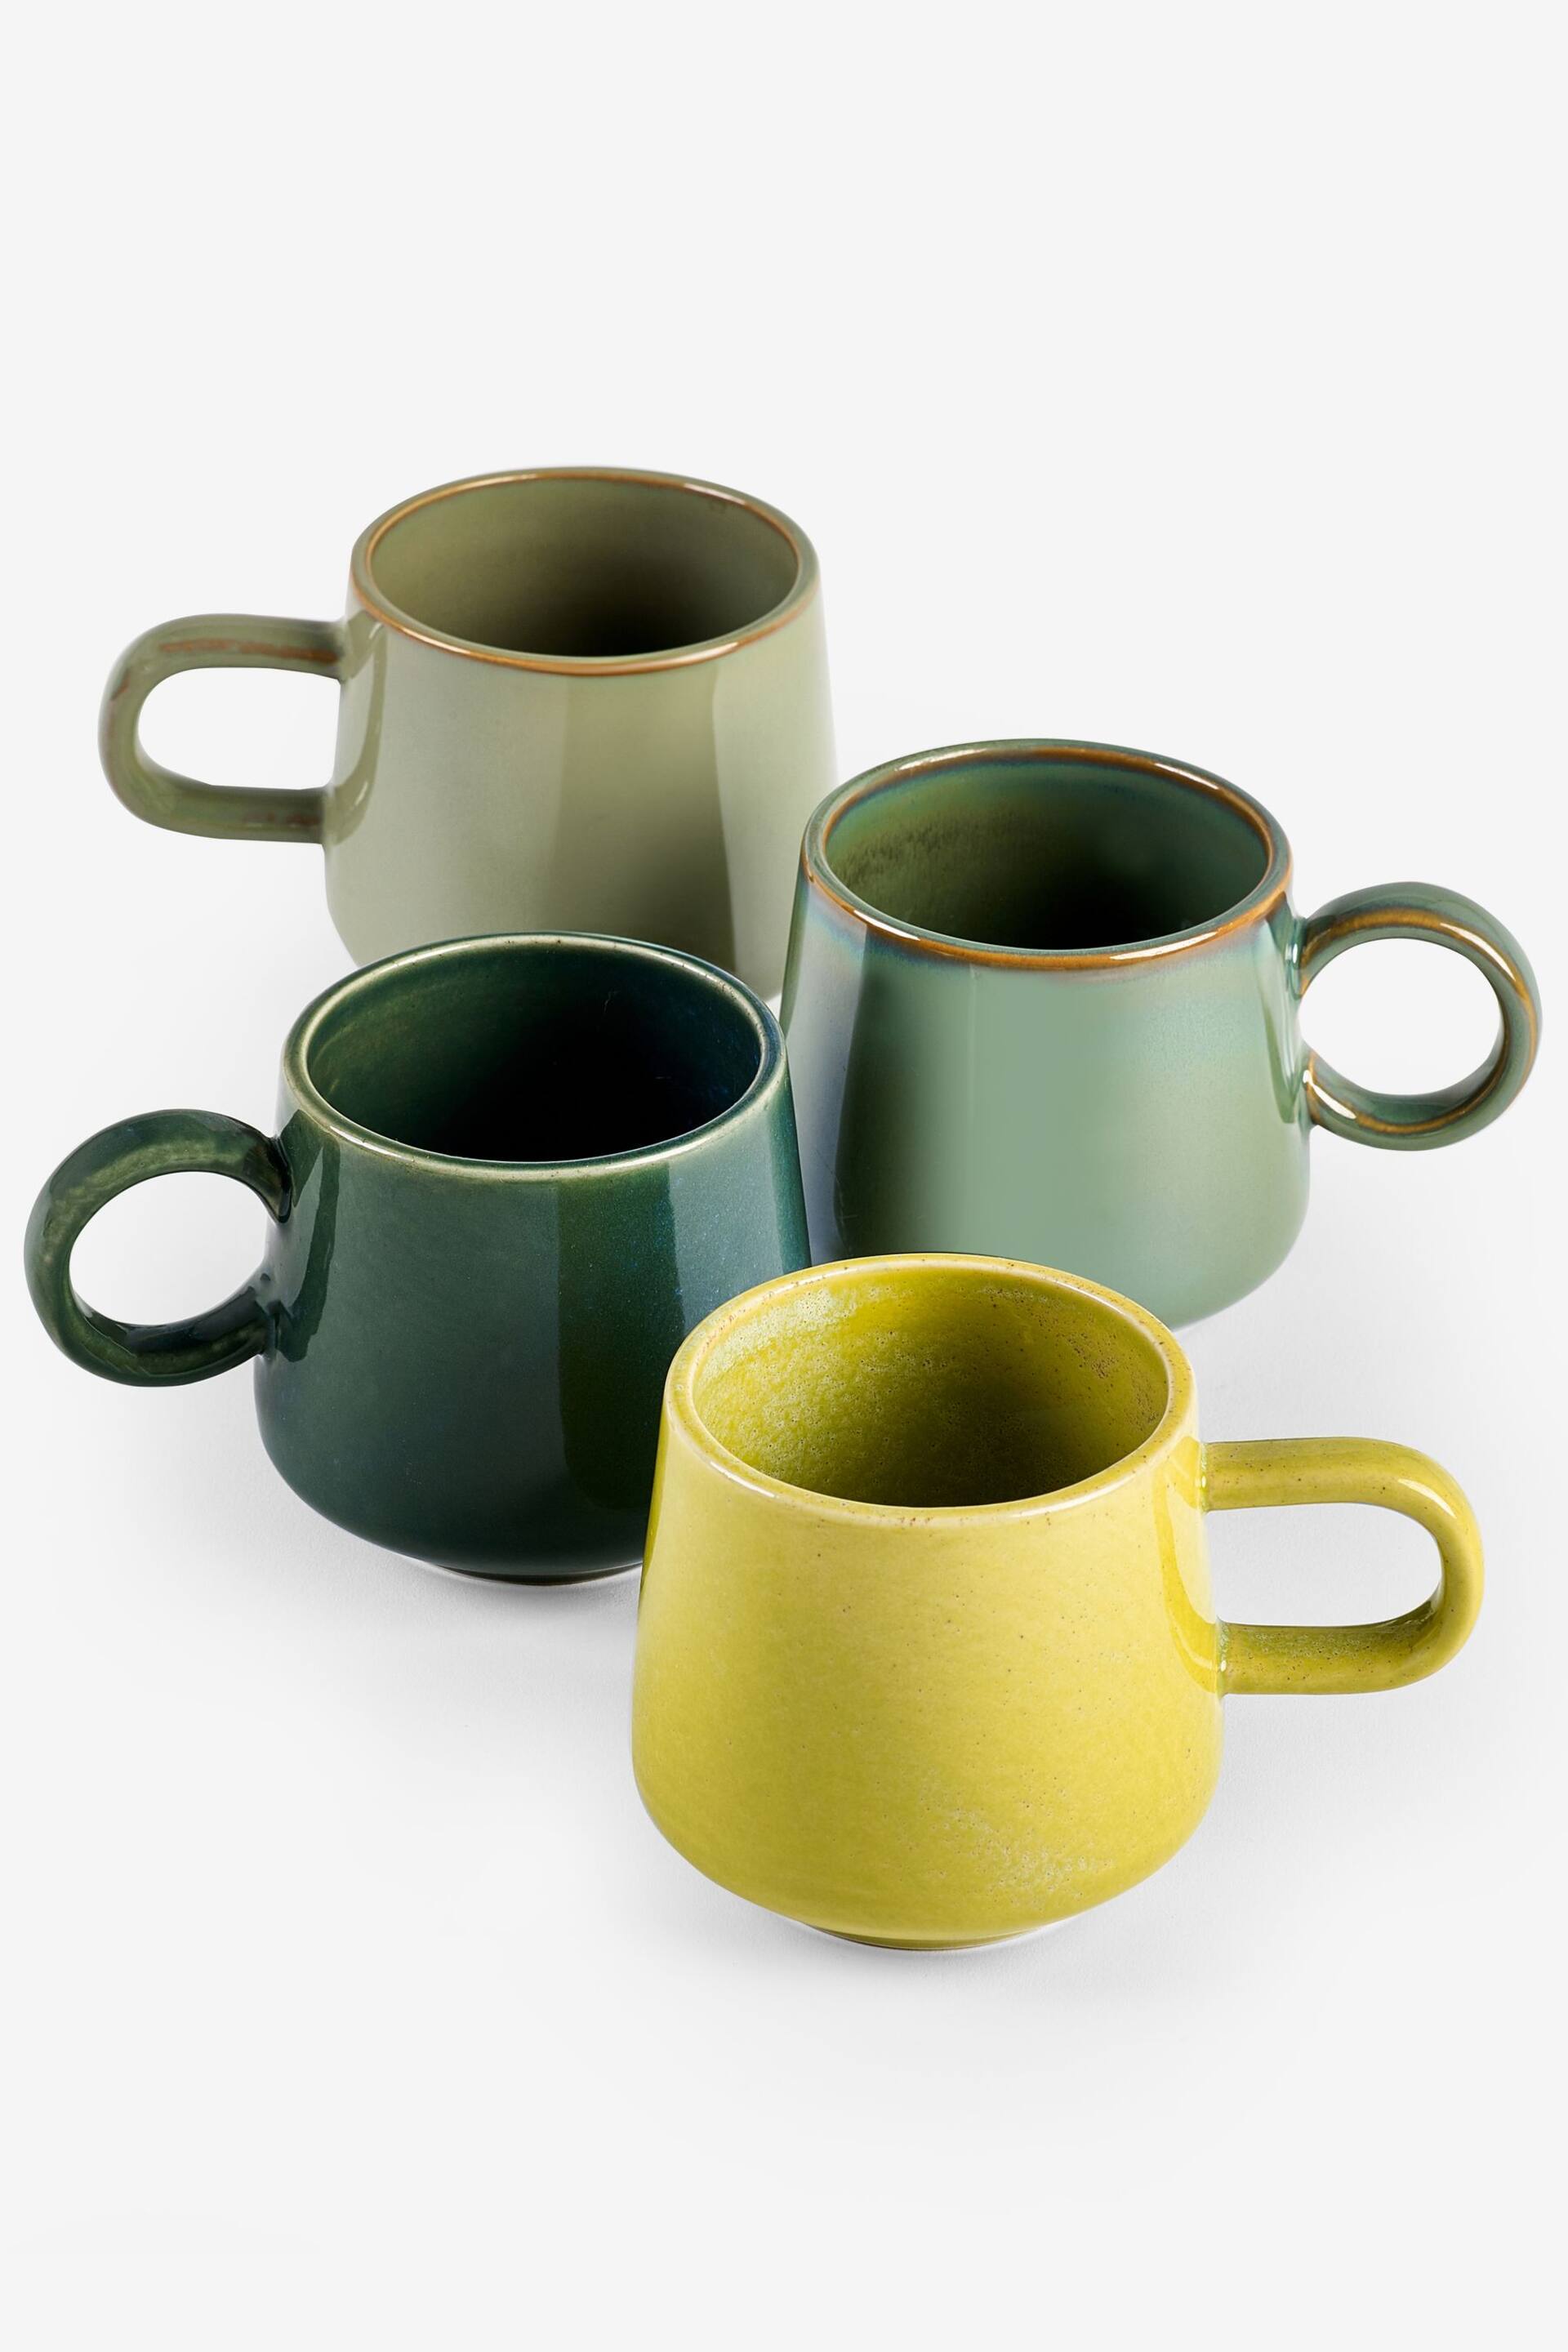 Set of 4 Green Reactive Glaze Medium Sized Mugs - Image 3 of 3